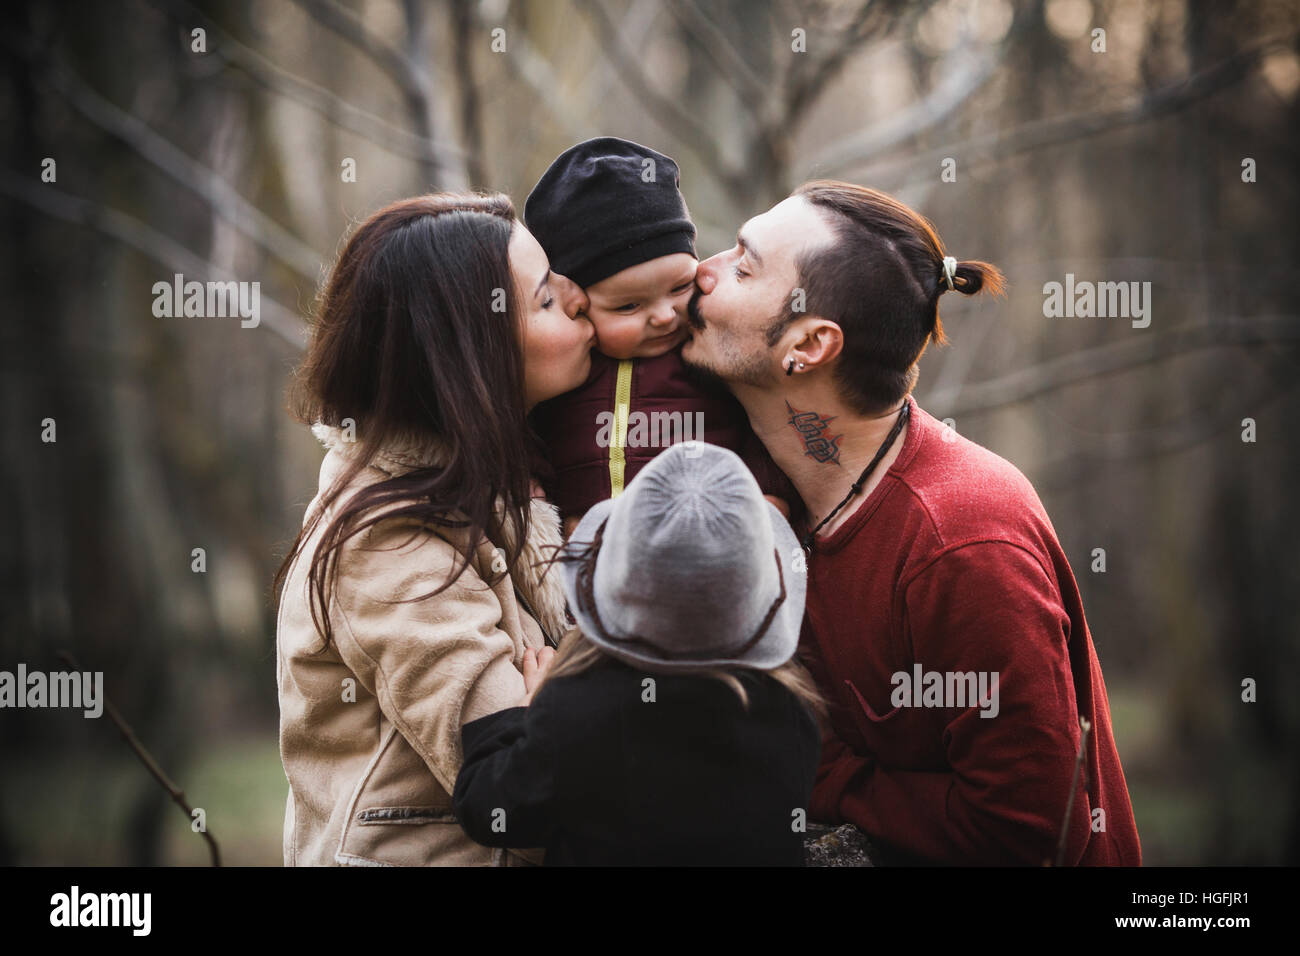 Famille heureuse dans le parc en automne Banque D'Images